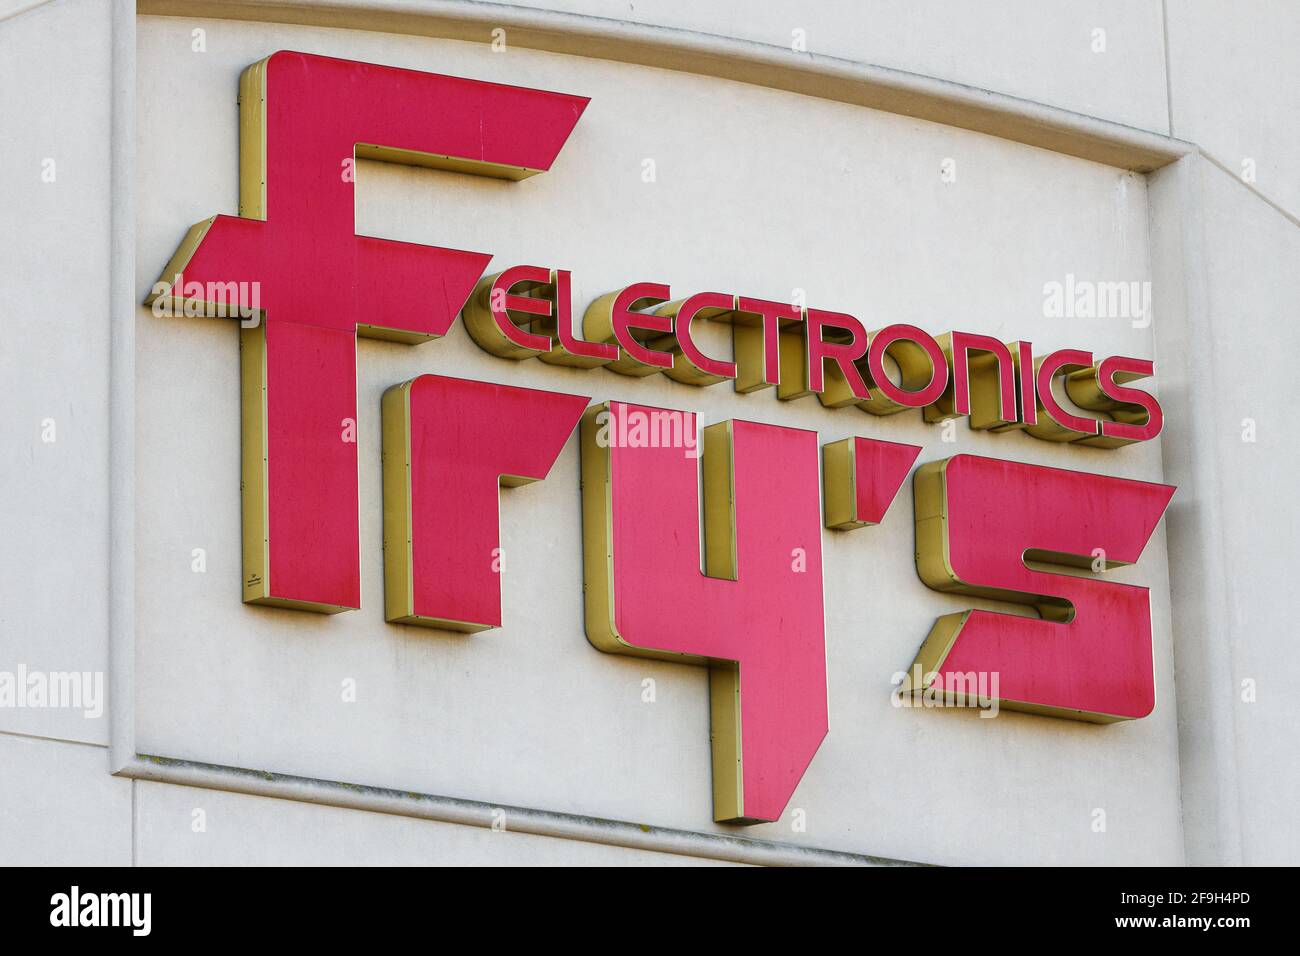 Renton, WA, États-Unis - 18 avril 2021 ; Une affiche de magasin d'électronique Fry's est rouge sur fond de pierre.La chaîne a fermé ses portes en février 2021 Banque D'Images